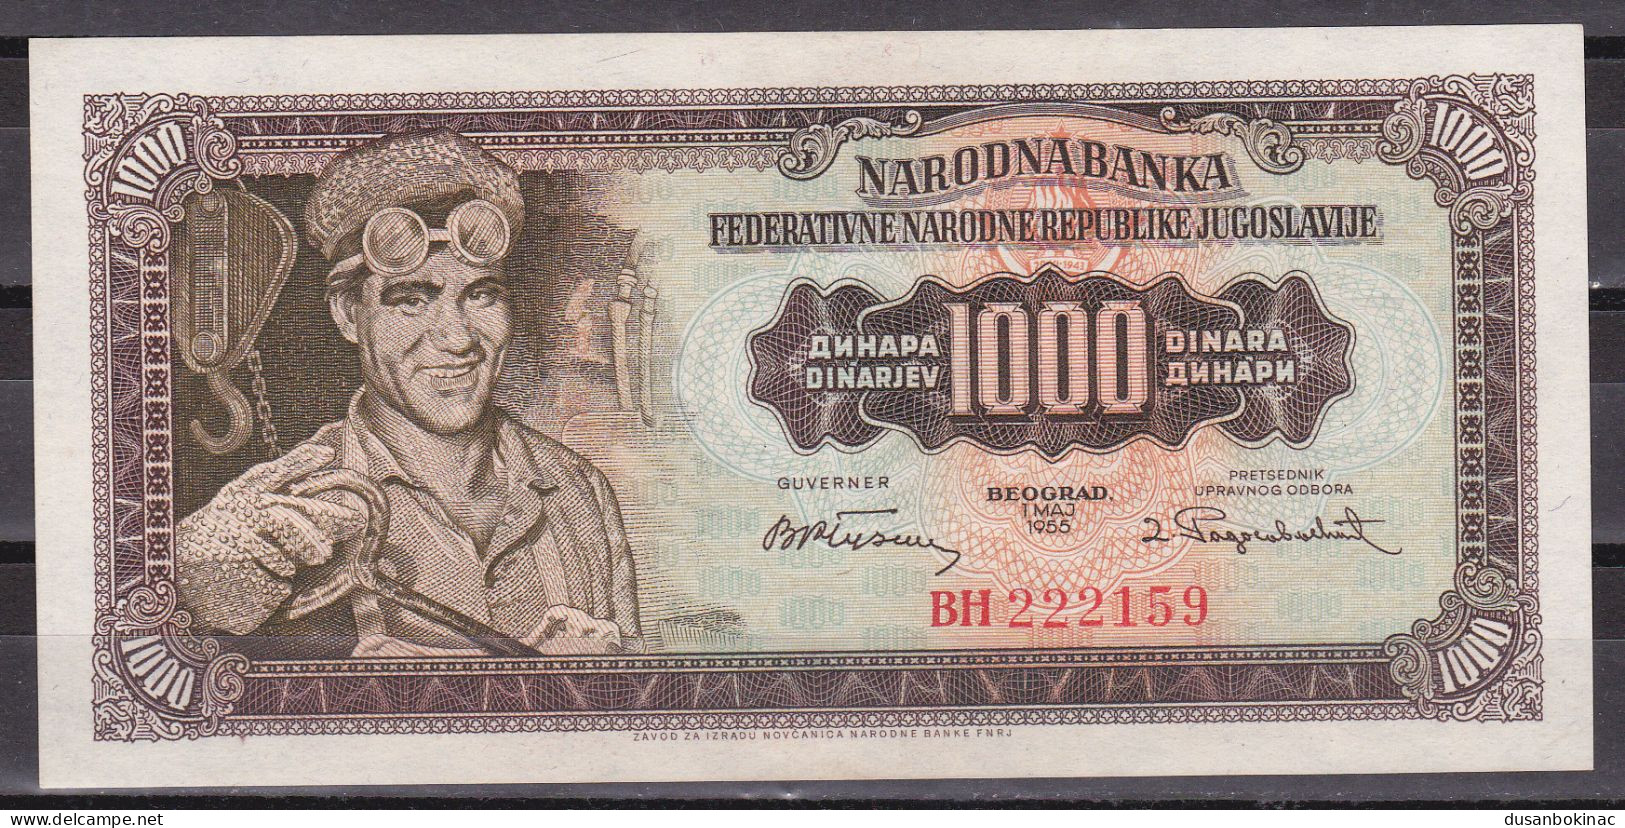 Yugoslavia-1000 Dinara 1955 UNC Without 2 Number Rare - Joegoslavië